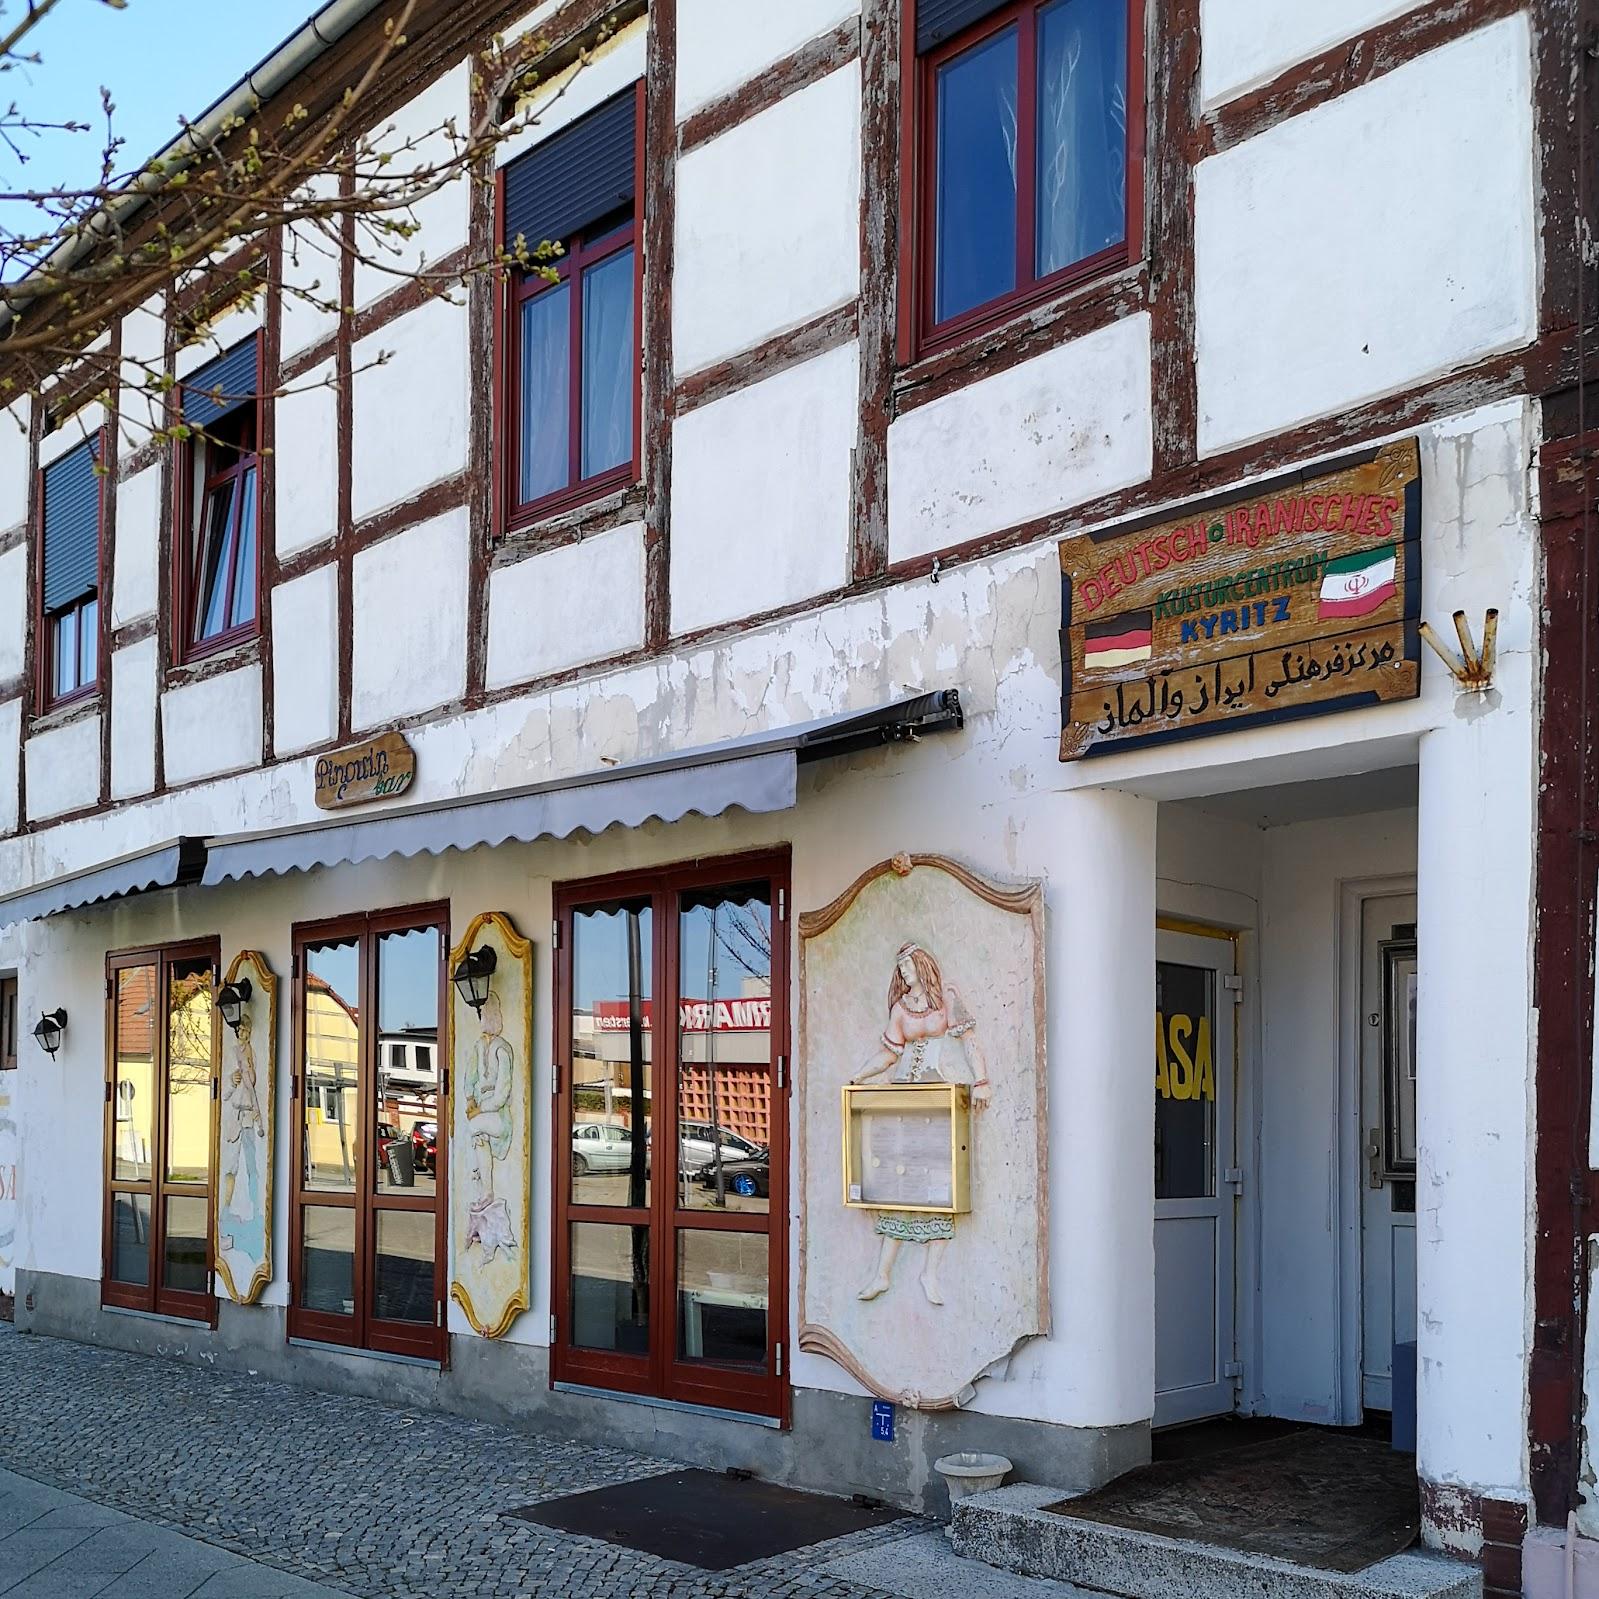 Restaurant "Mi Casa Pinguin Bar" in Kyritz